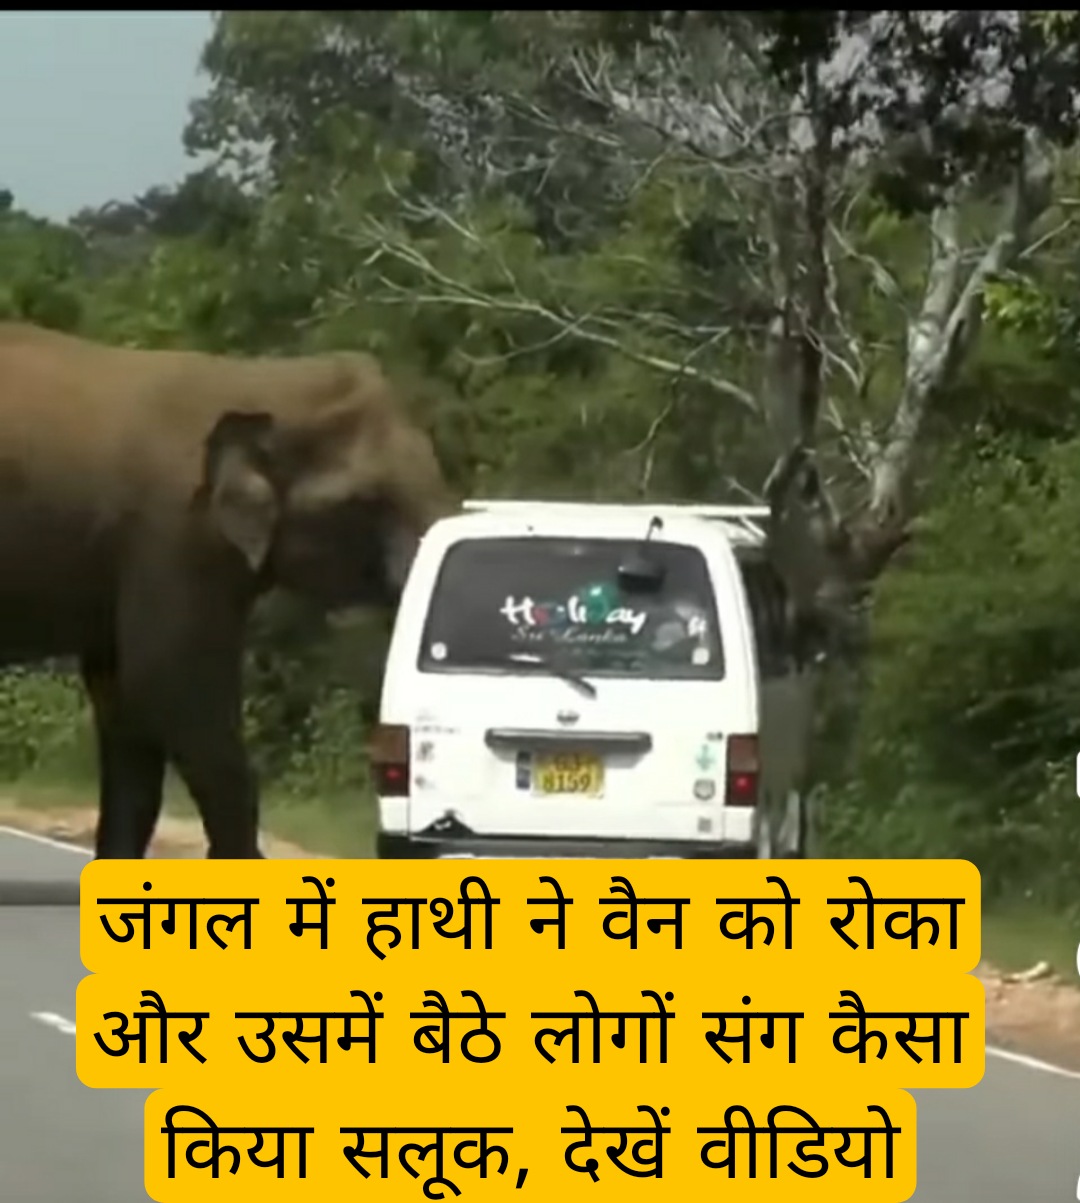 जंगल में हाथी ने मारुति वैन को रोका और उसमें बैठे लोगों के साथ उसने कैसा किया सलूक, देखें वीडियो 